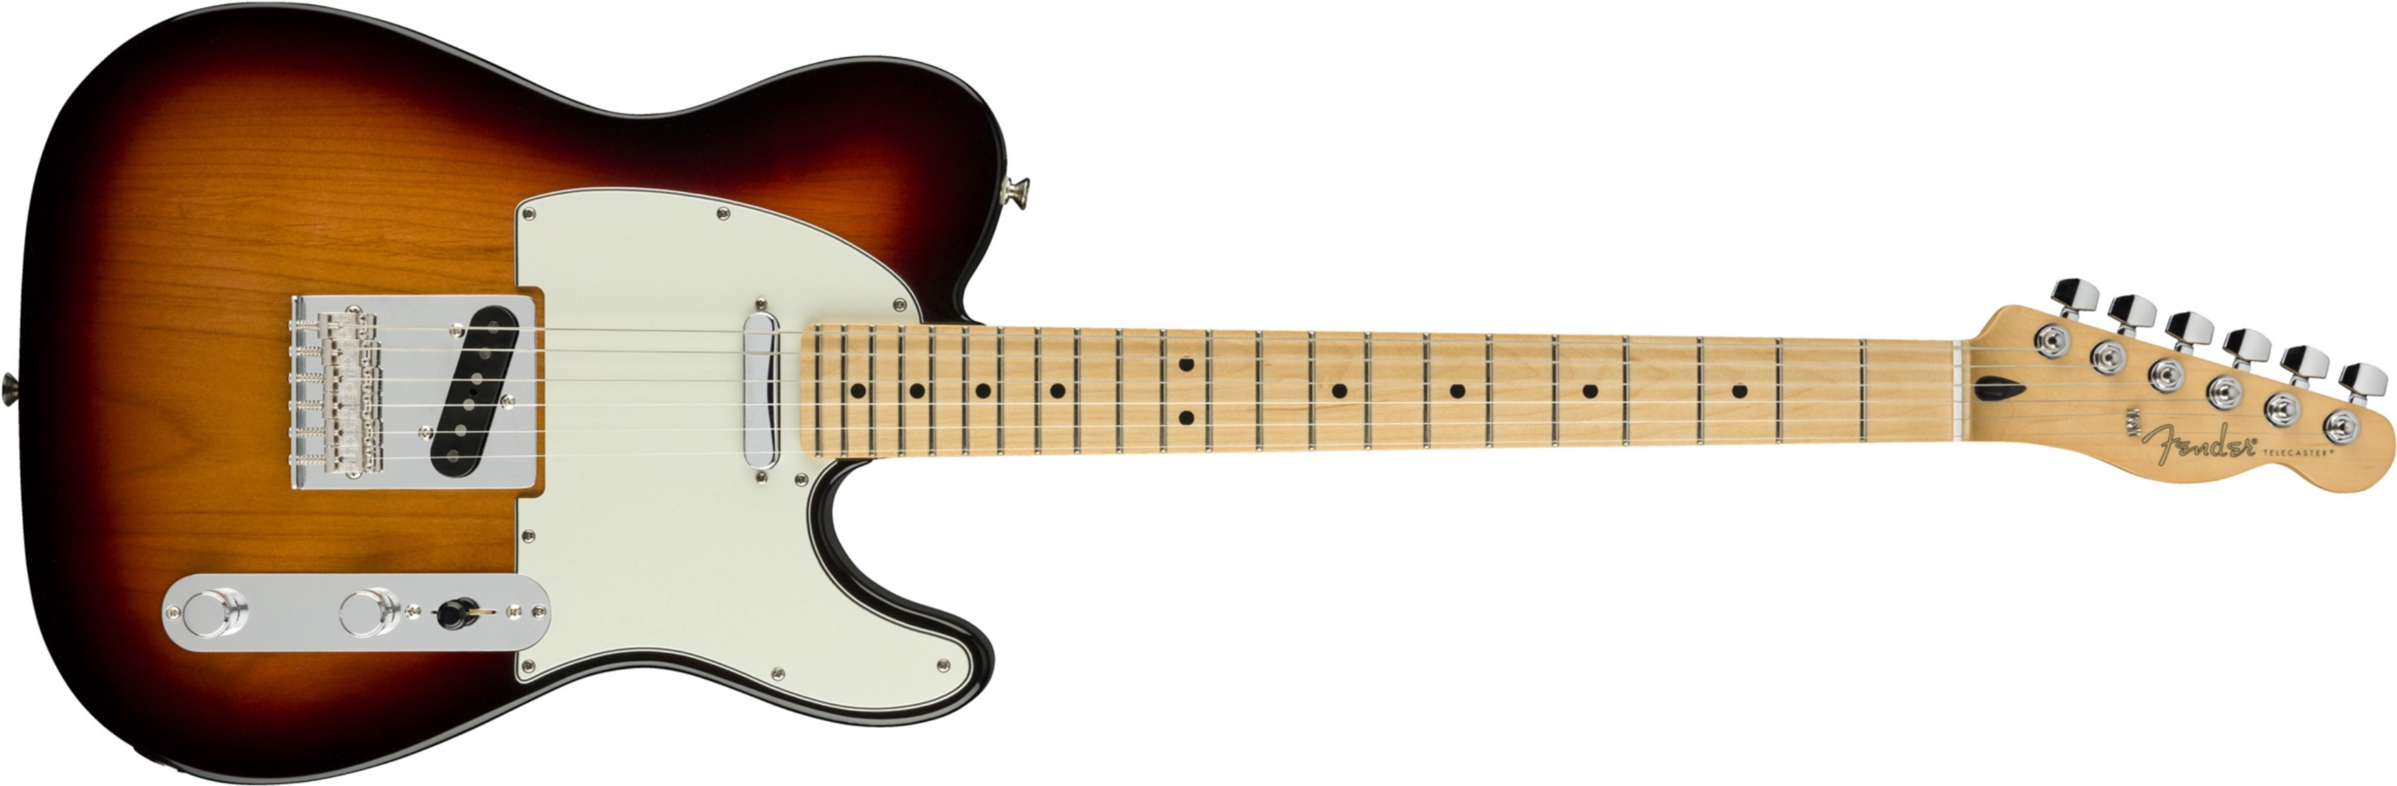 Fender Tele Player Mex Mn - 3-color Sunburst - Guitarra eléctrica con forma de tel - Main picture